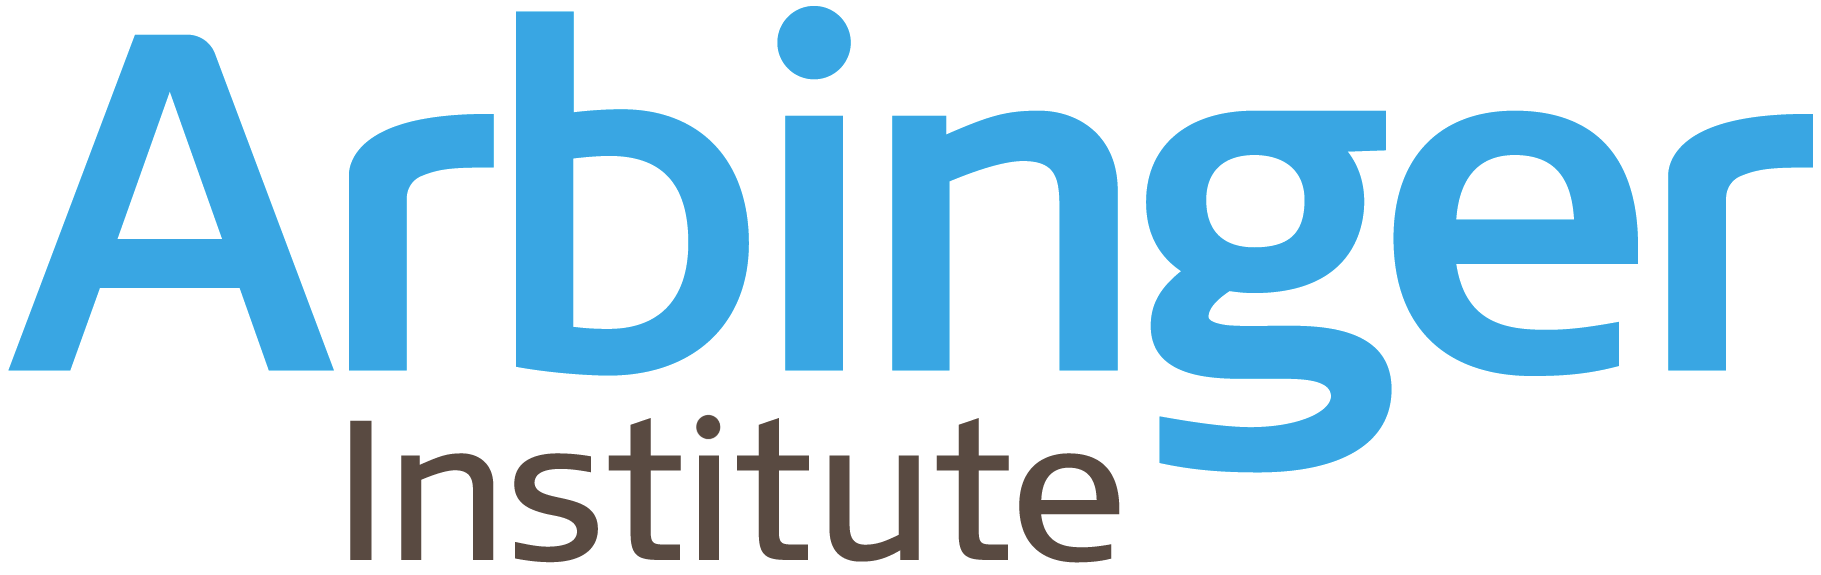 Arbinger Institute logo